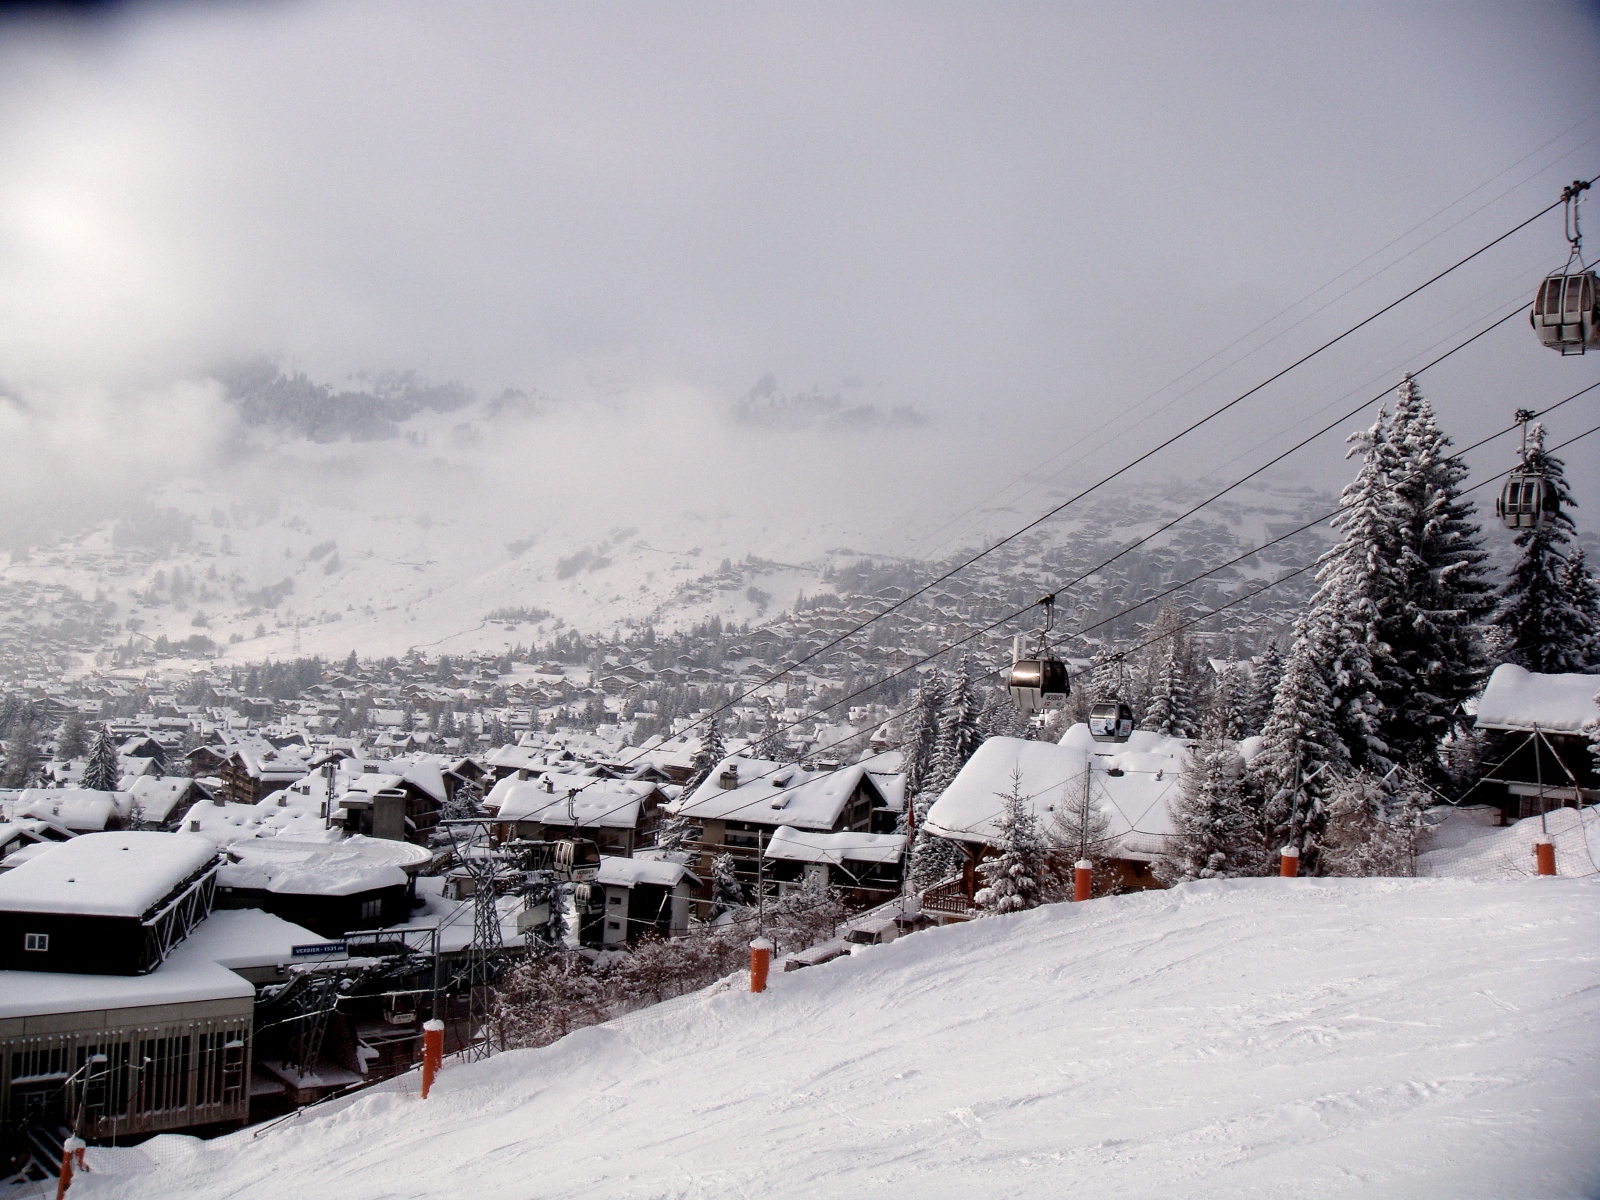 Nuevo forfait para todo el Valais suizo: 2400 km de pistas sin limite